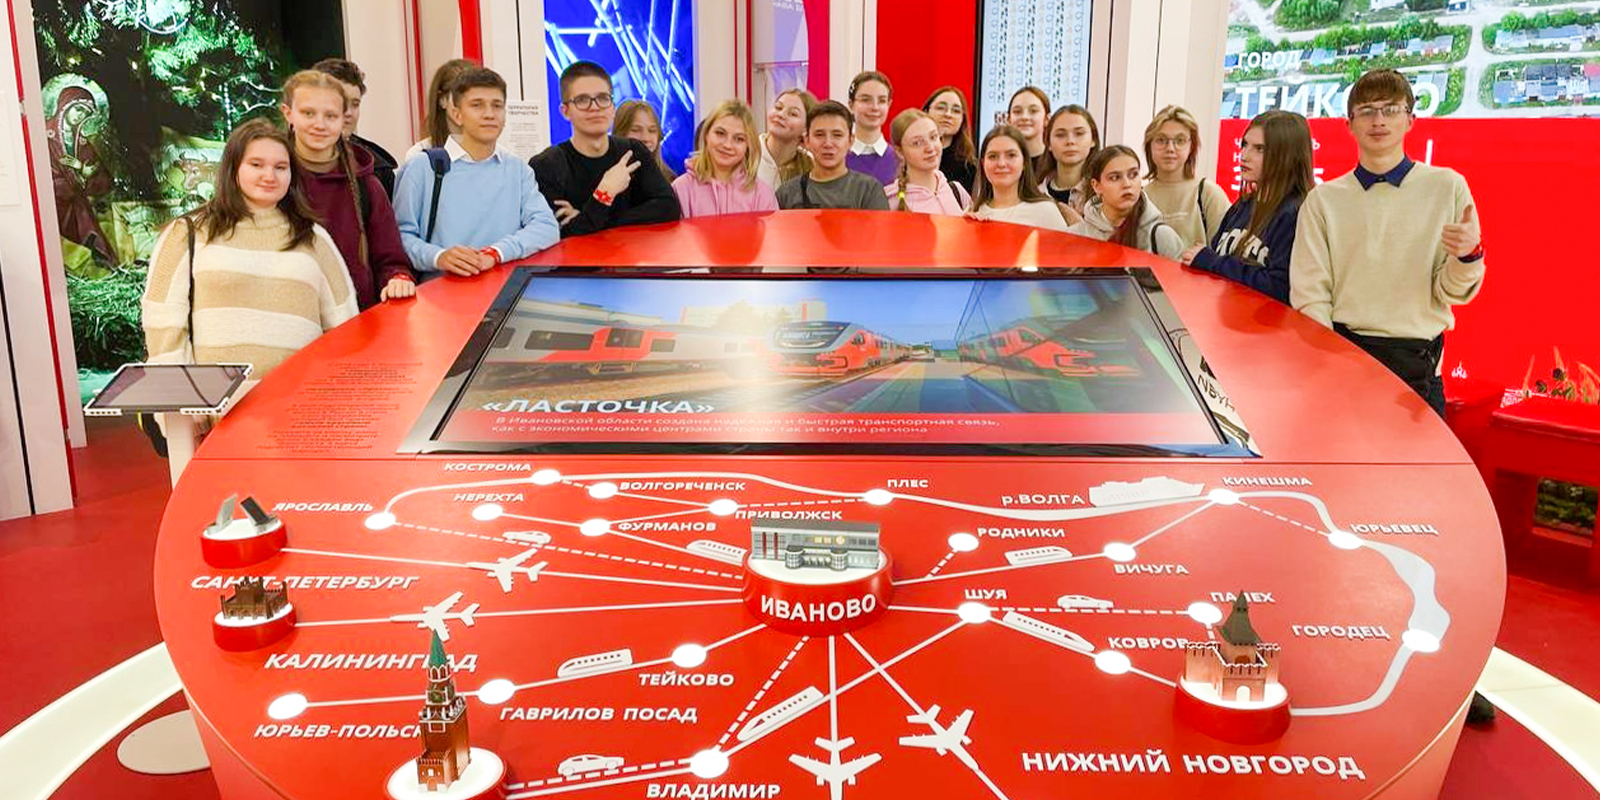 Губернатор Ивановской области поручил организовать поездку для семей участников СВО на выставку "Россия"